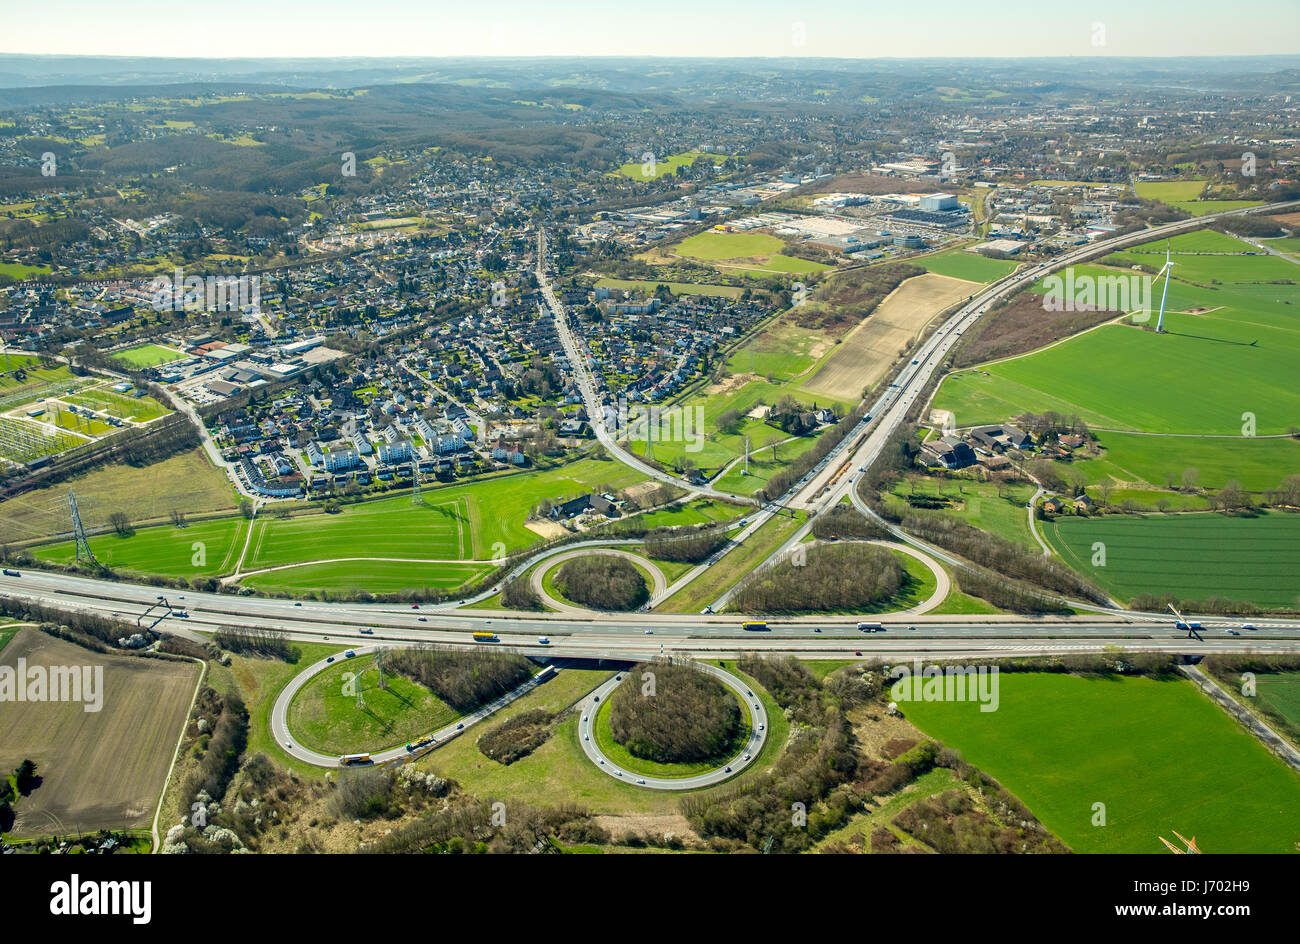 Il triangolo autostradale A45 e A44 autostrada Dortmund-Kruckel, Dortmund, la zona della Ruhr, Renania settentrionale-Vestfalia, Germania,Autobahndreieck Autobahn A45 und Autobahn Foto Stock